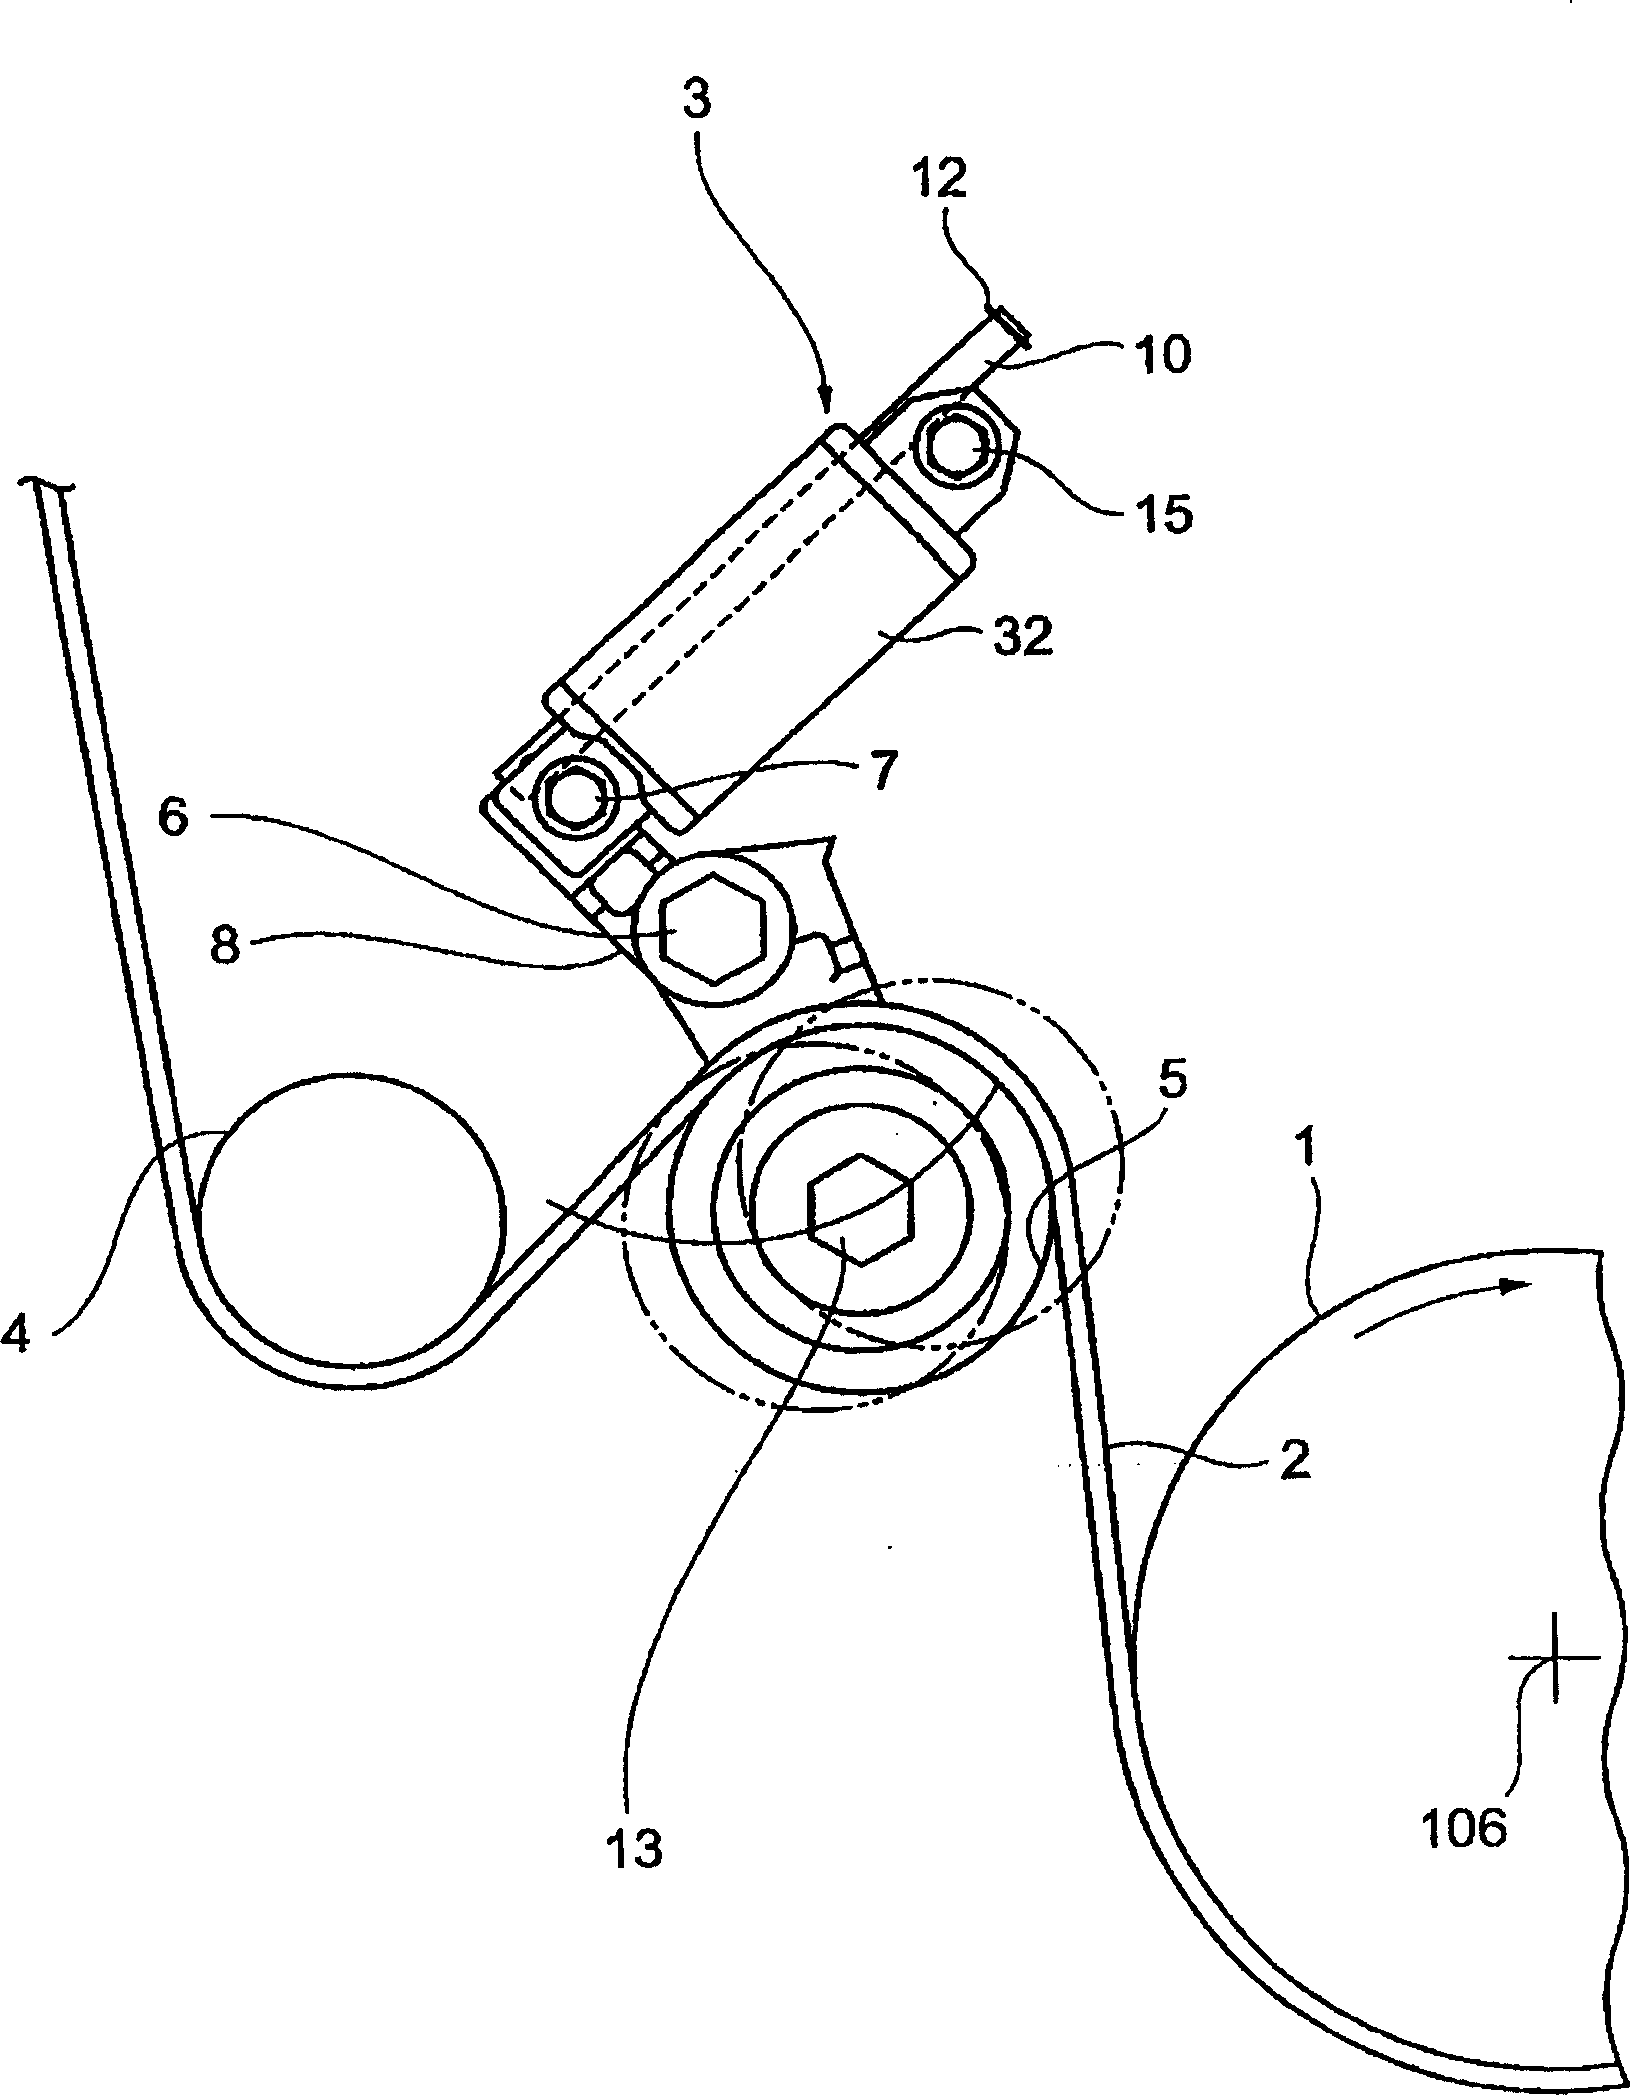 Adjusting device of belt tension